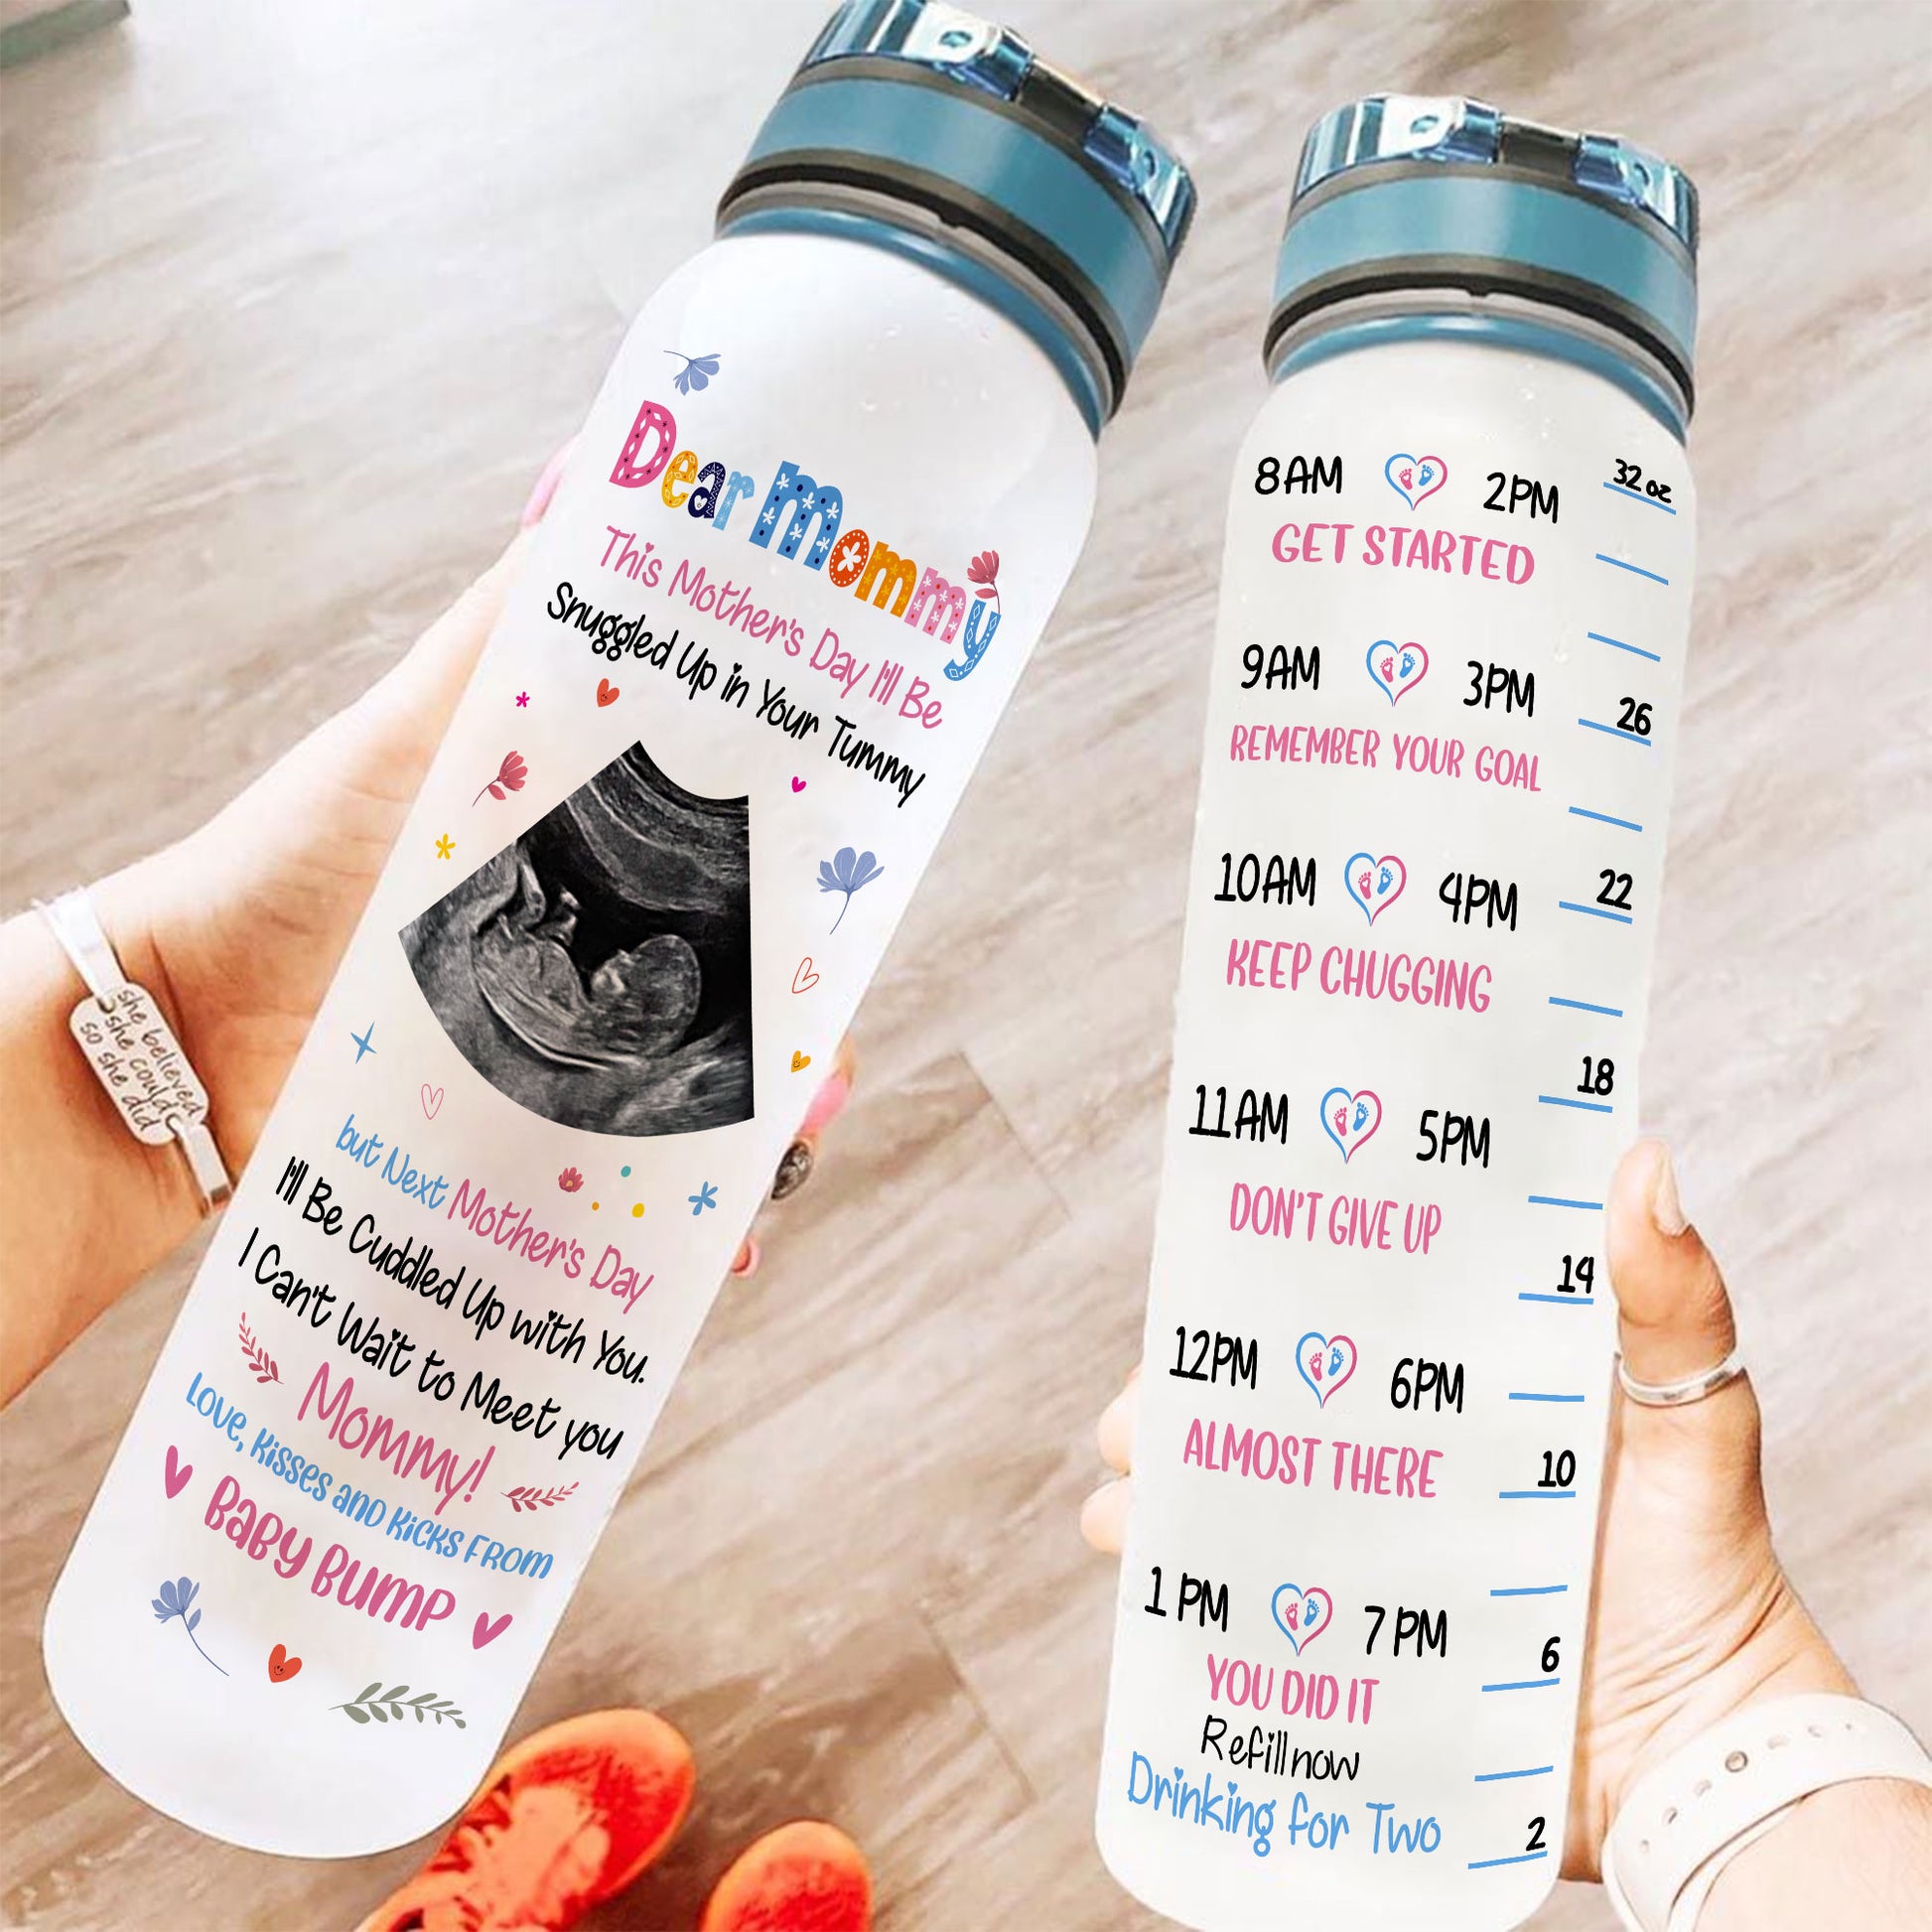 Hot water bottle in pregnancy: Is it safe?